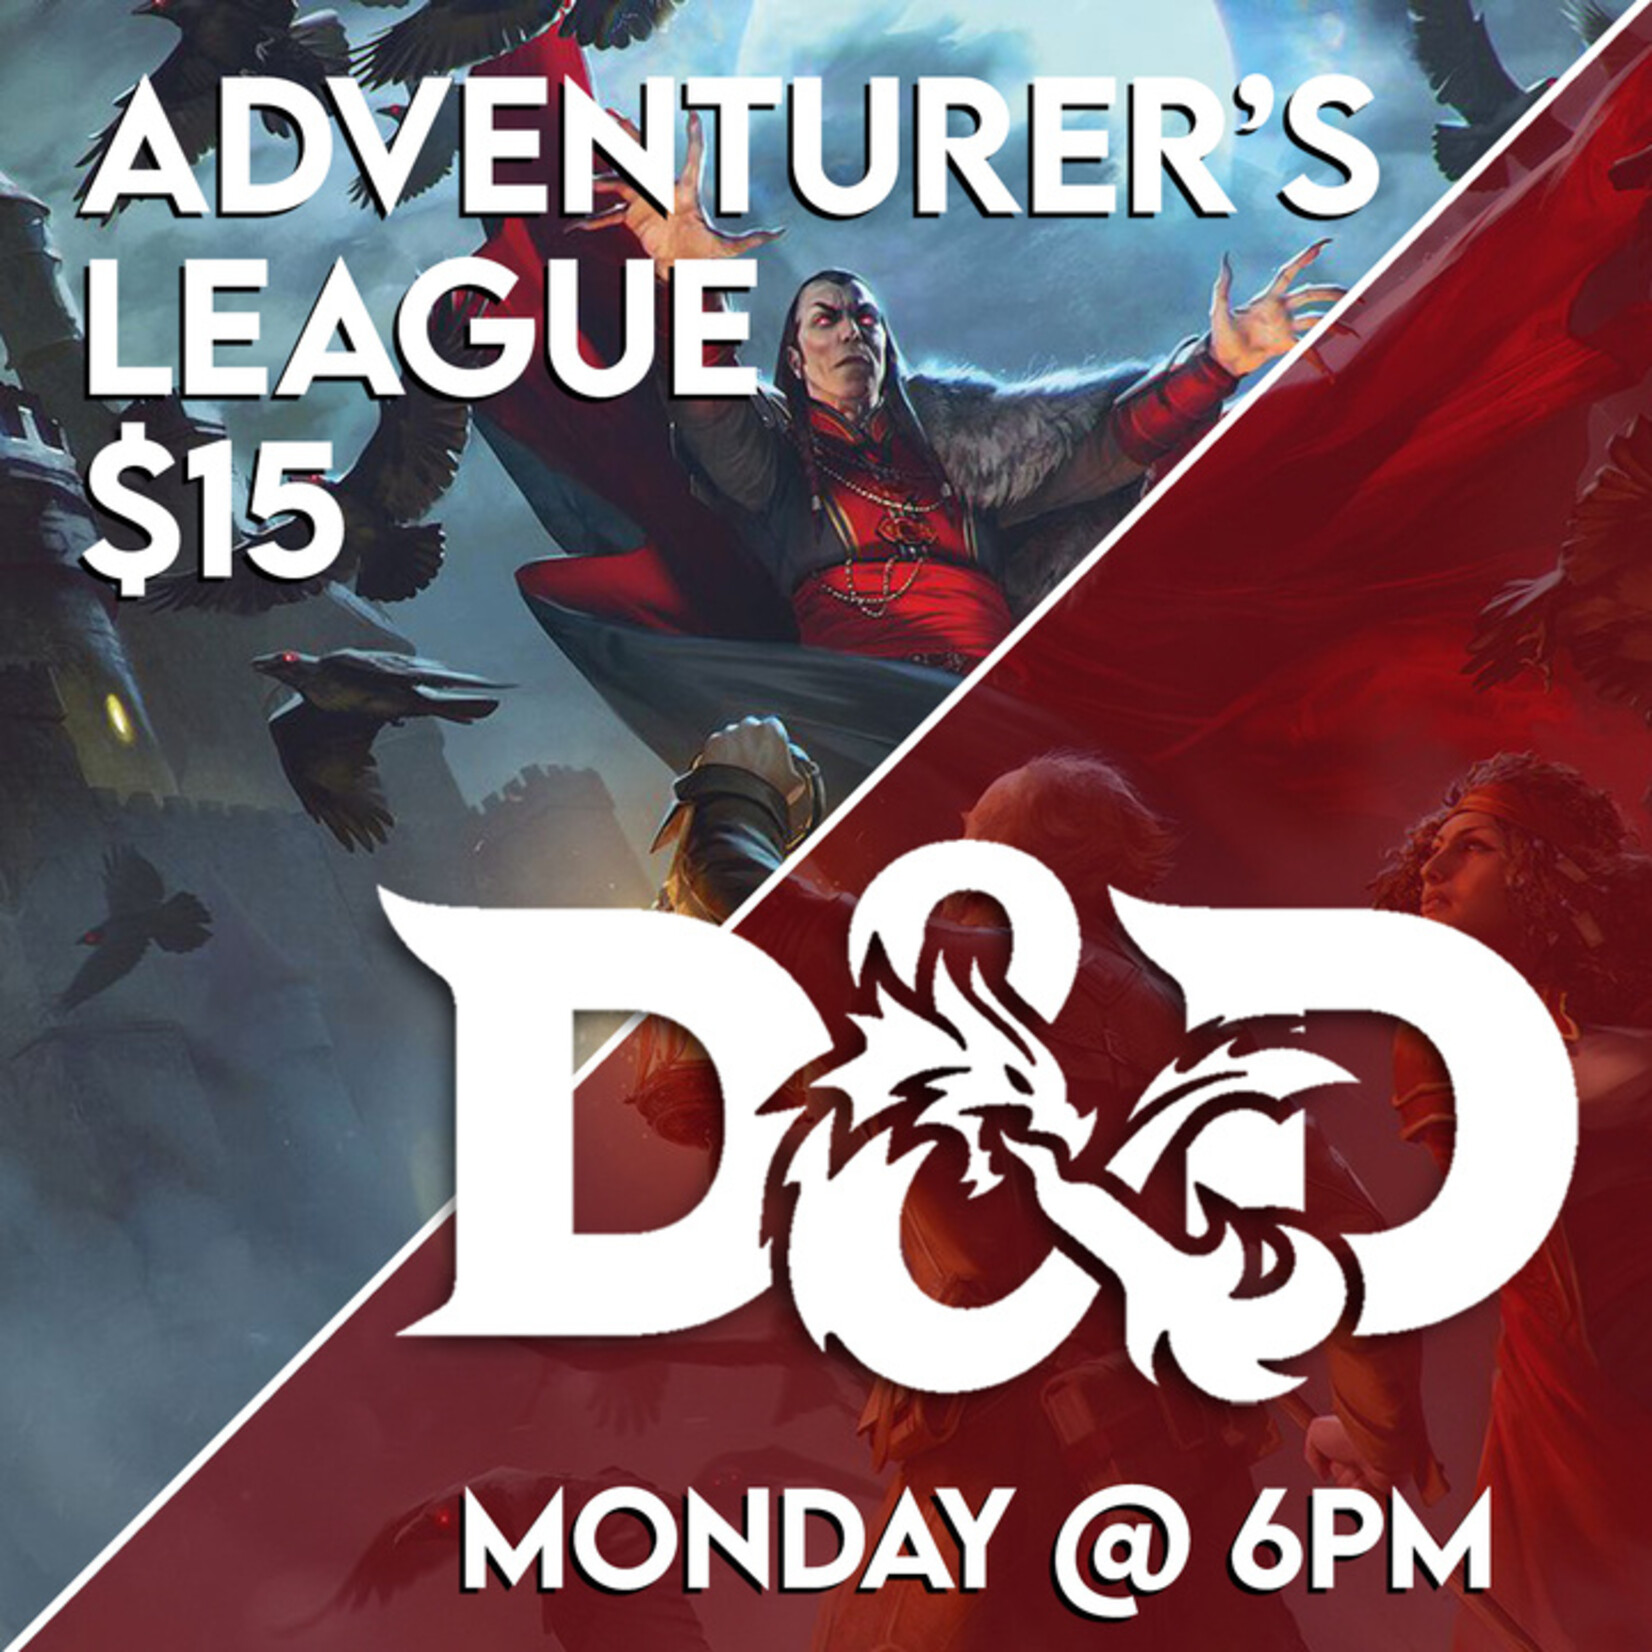 Dungeons & Dragons Events 10/02 Monday @ 6 PM - D&D Adventurer's League w/ Kai